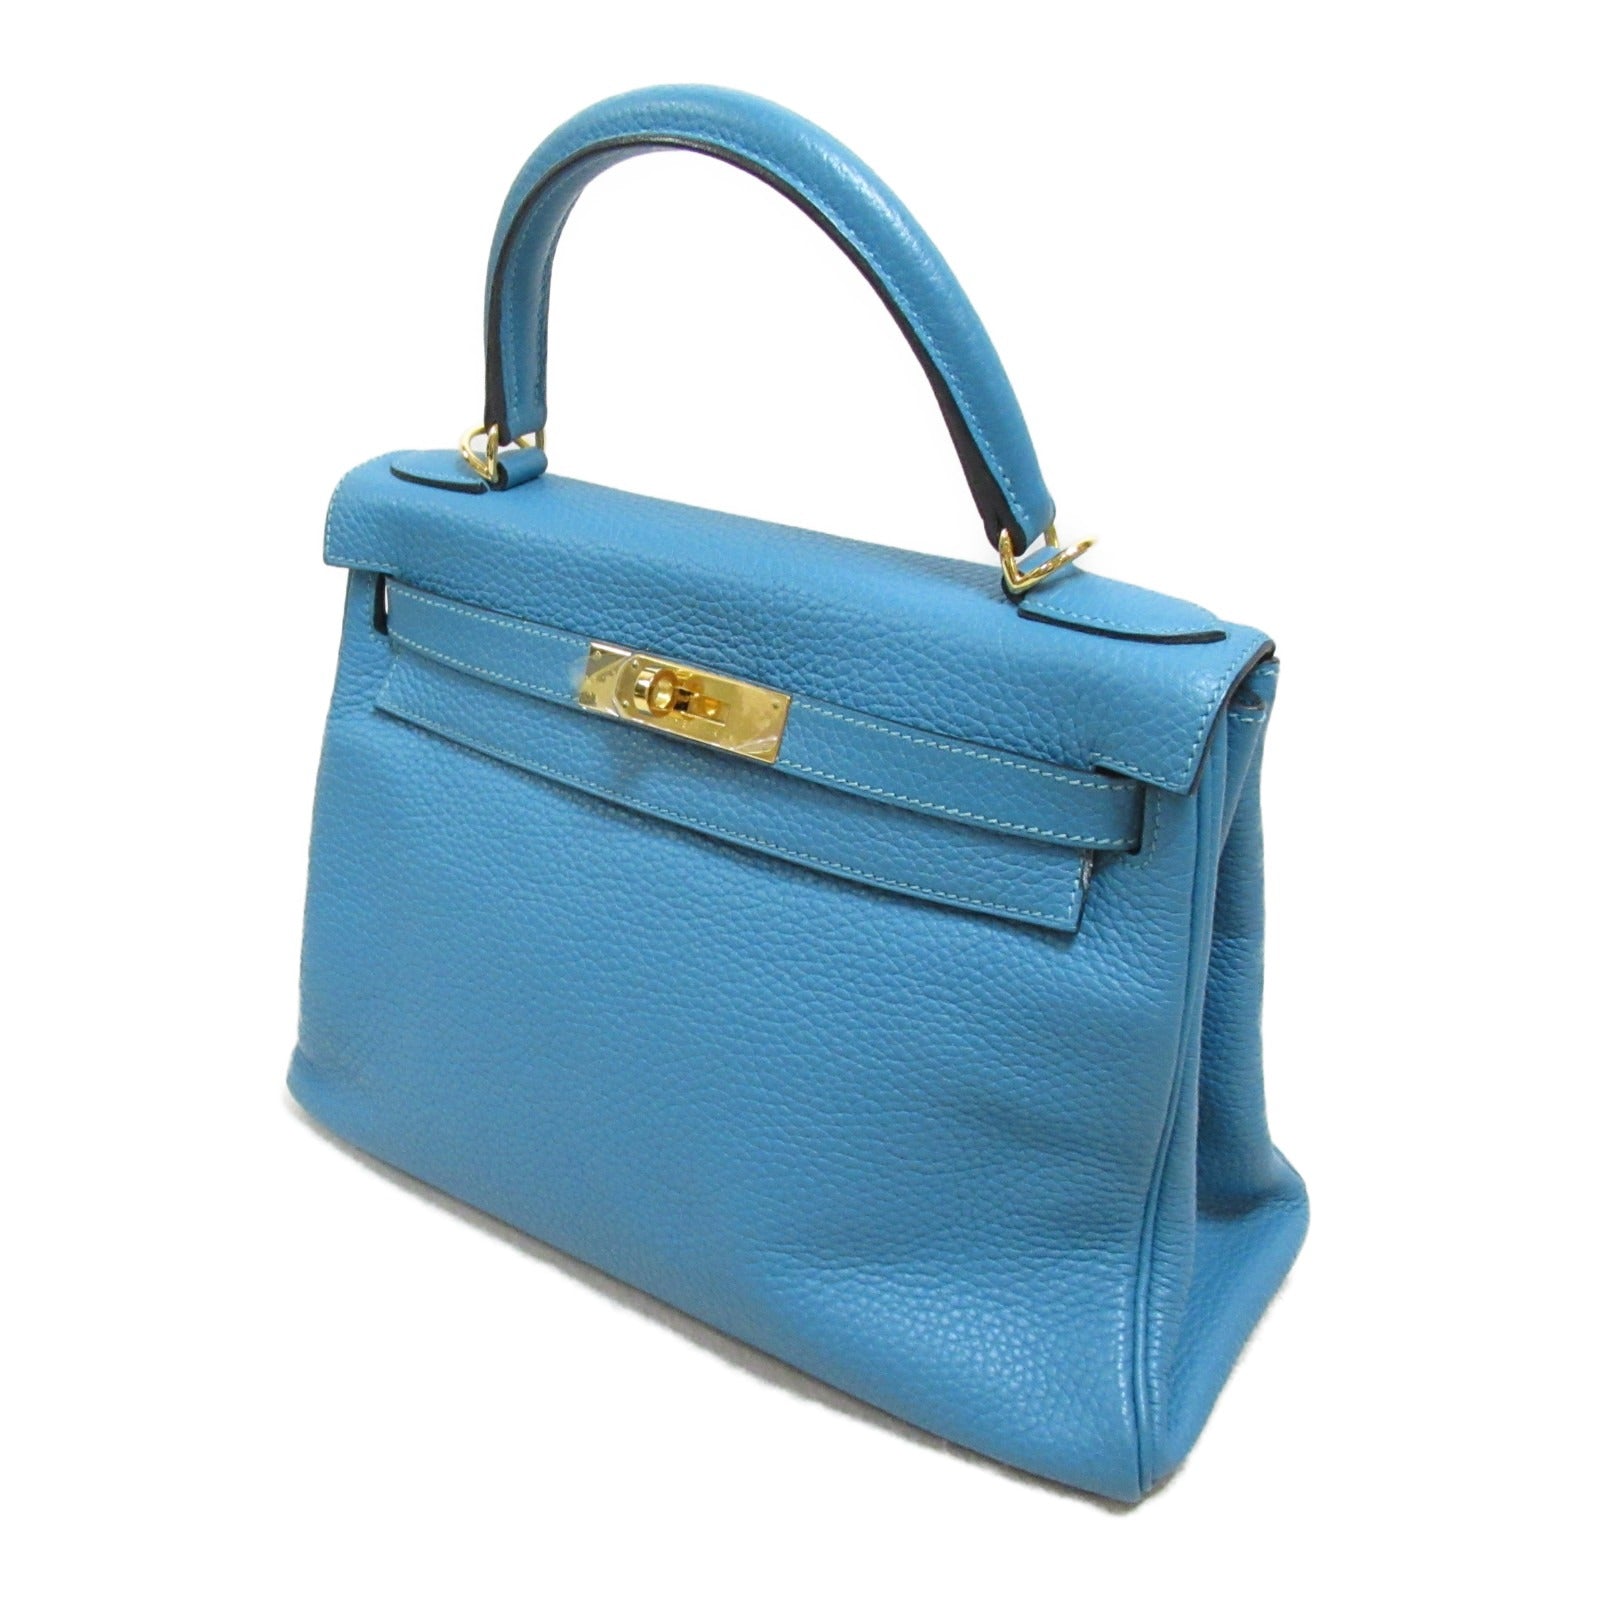 Hermes Kelly 28 Handbag Handbag Handbag, Handbags, Handbags, Handbags, Handbags, Handbags, Handbags, Handbags, Handbags, Handbags